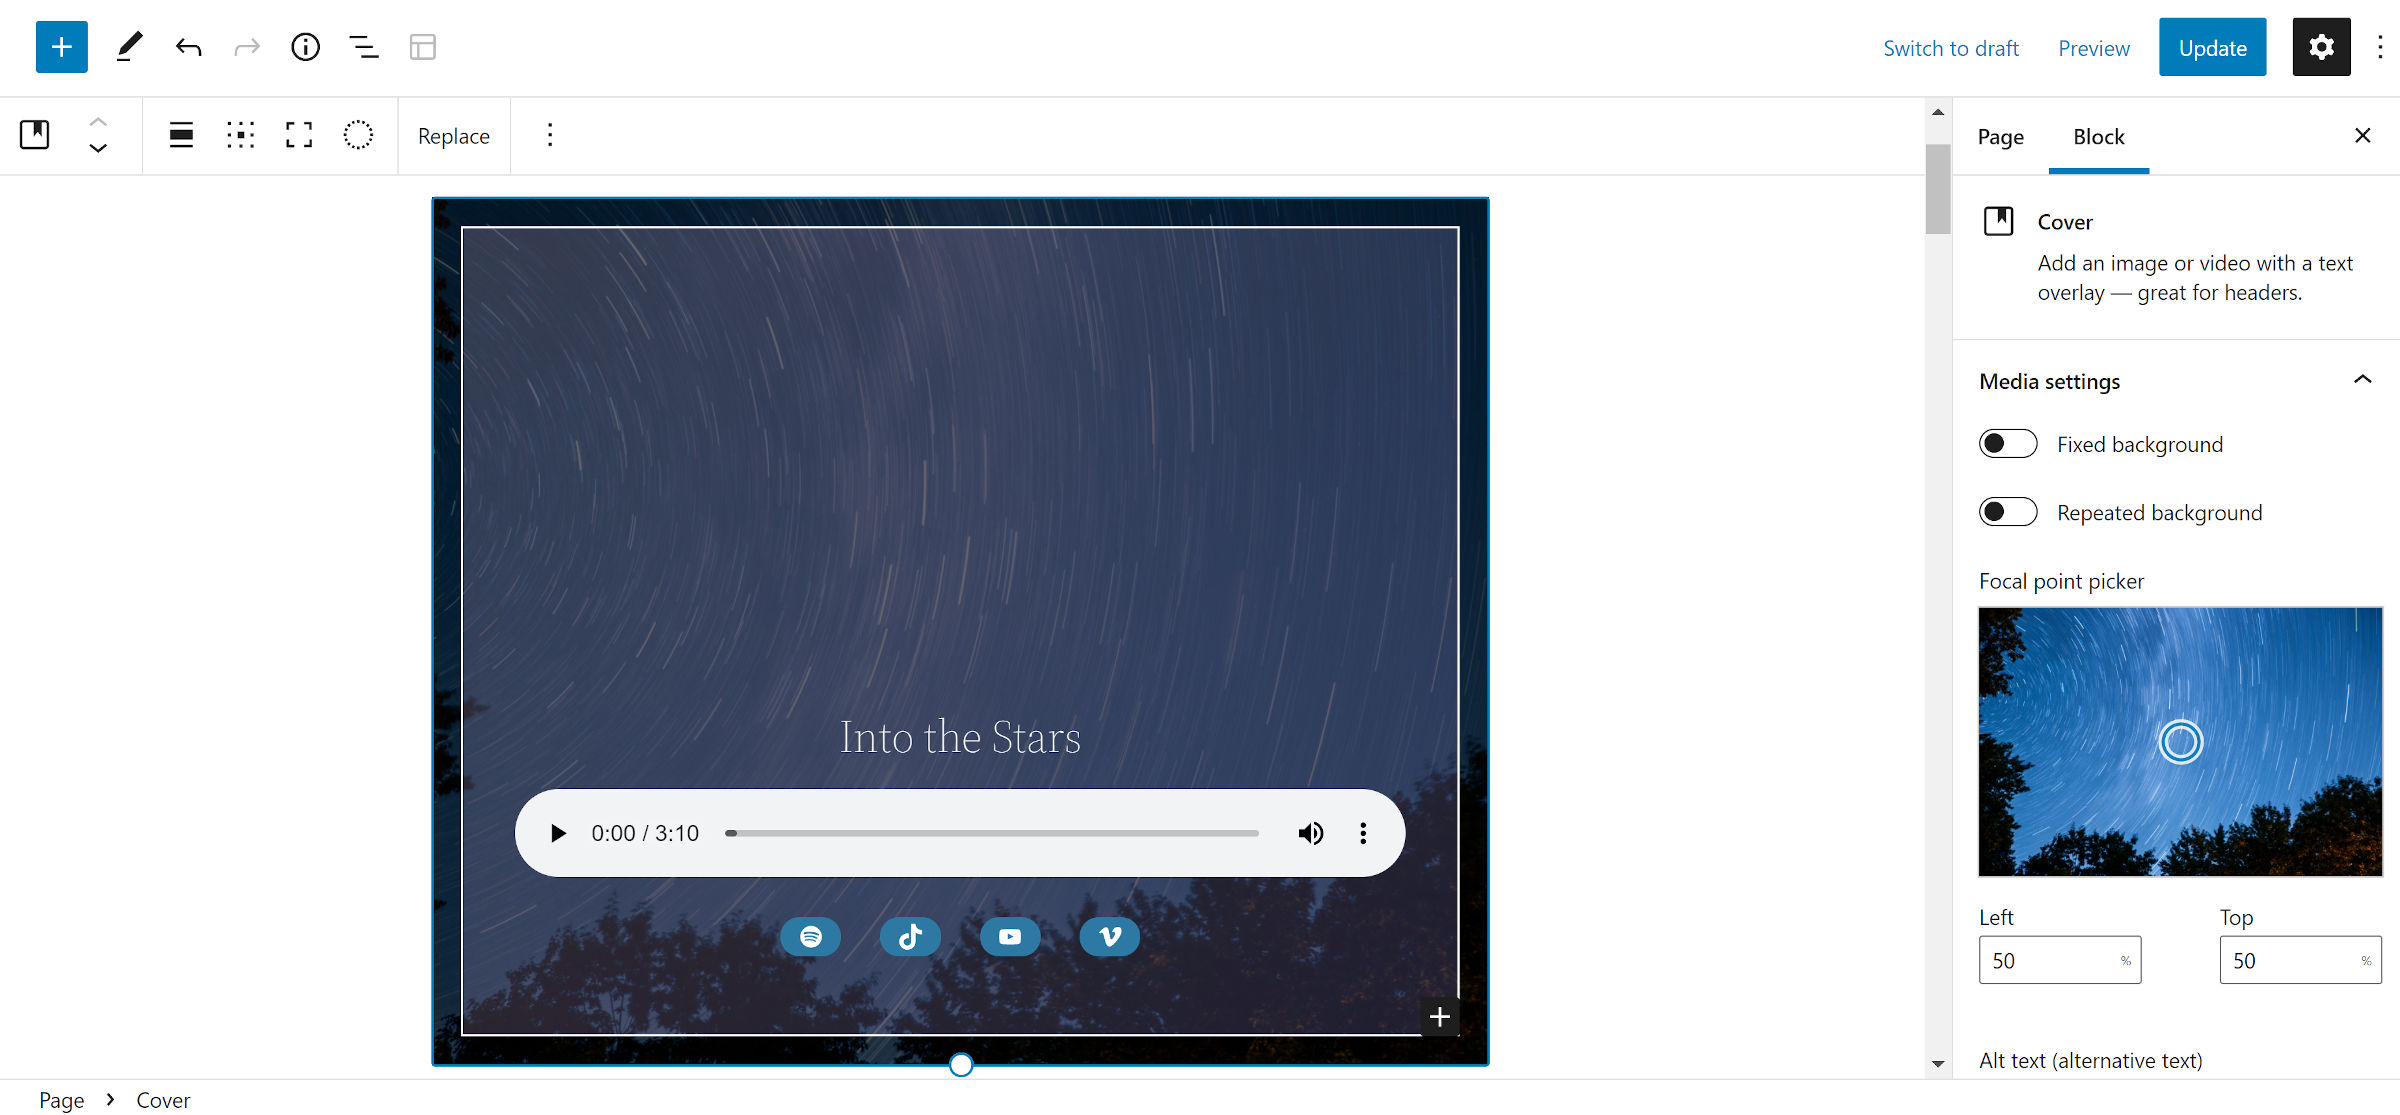 Schema di blocco audio con uno sfondo di copertura del cielo notturno.  I collegamenti social sono sotto il lettore audio.